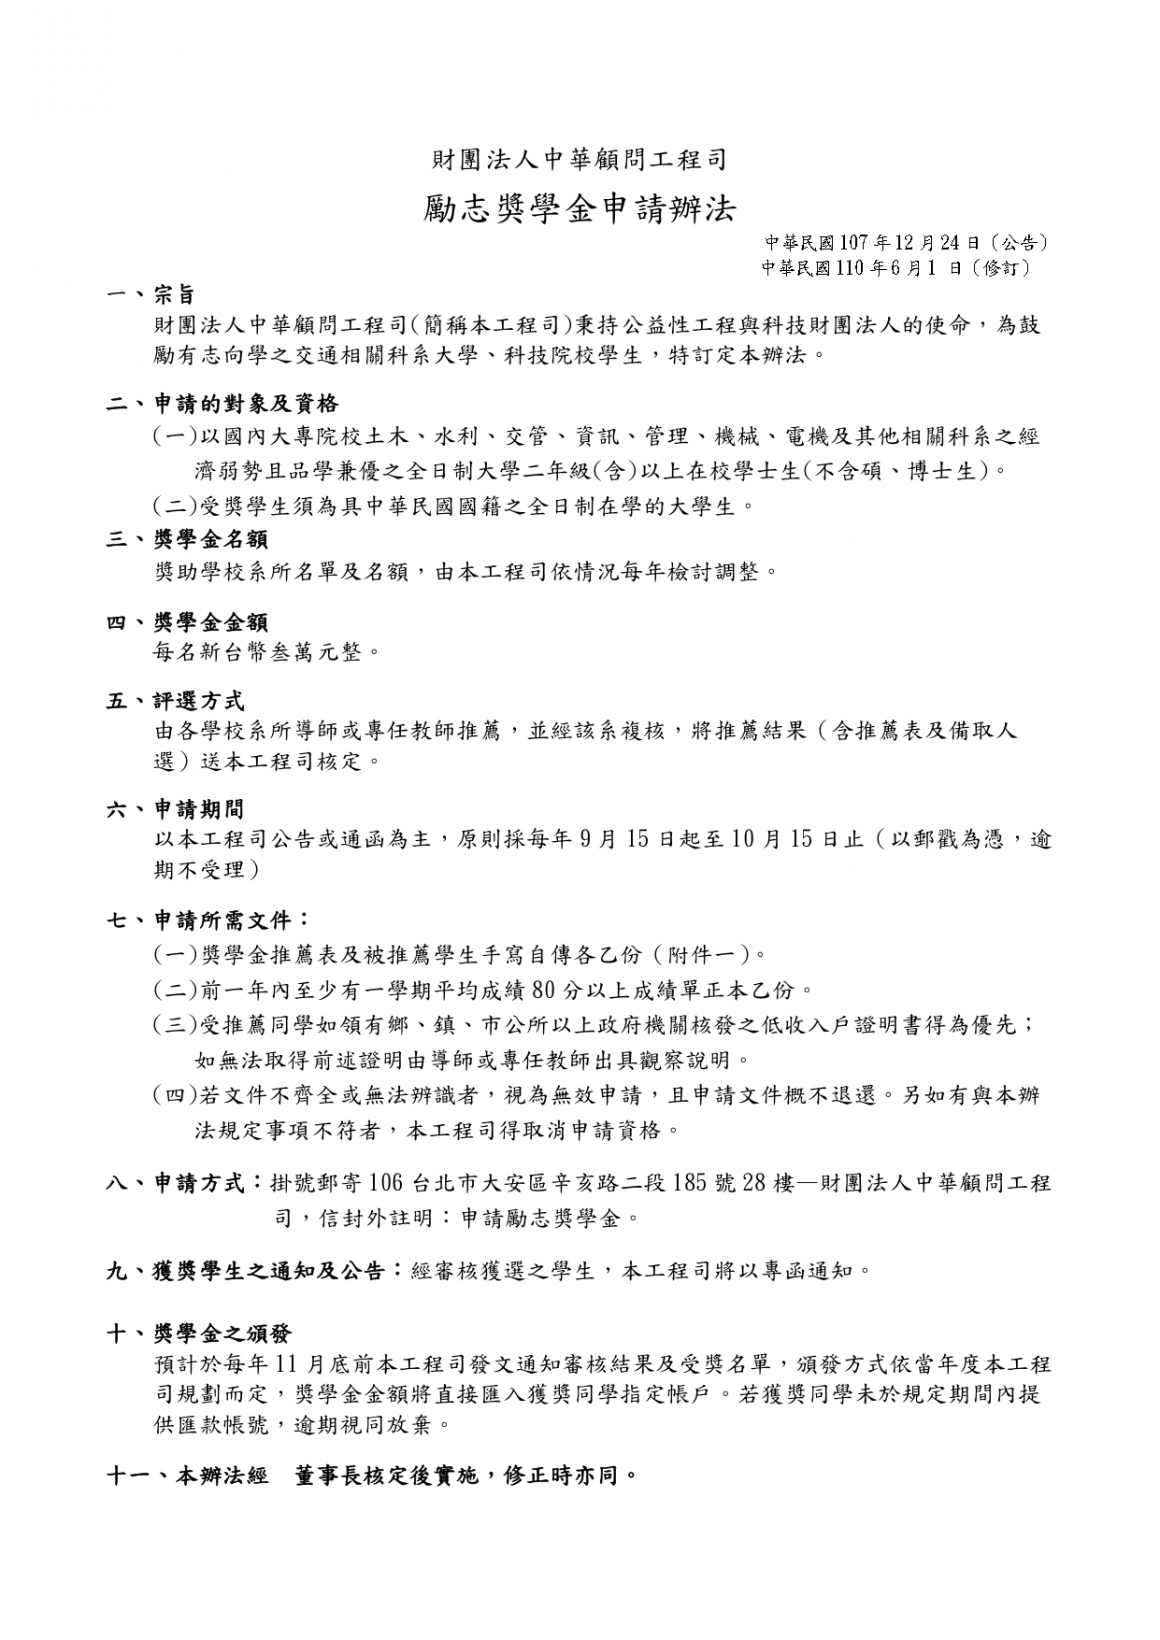 0000848_中華顧問工程司勵志獎學金申請辦法(1100601公告)_page-0001